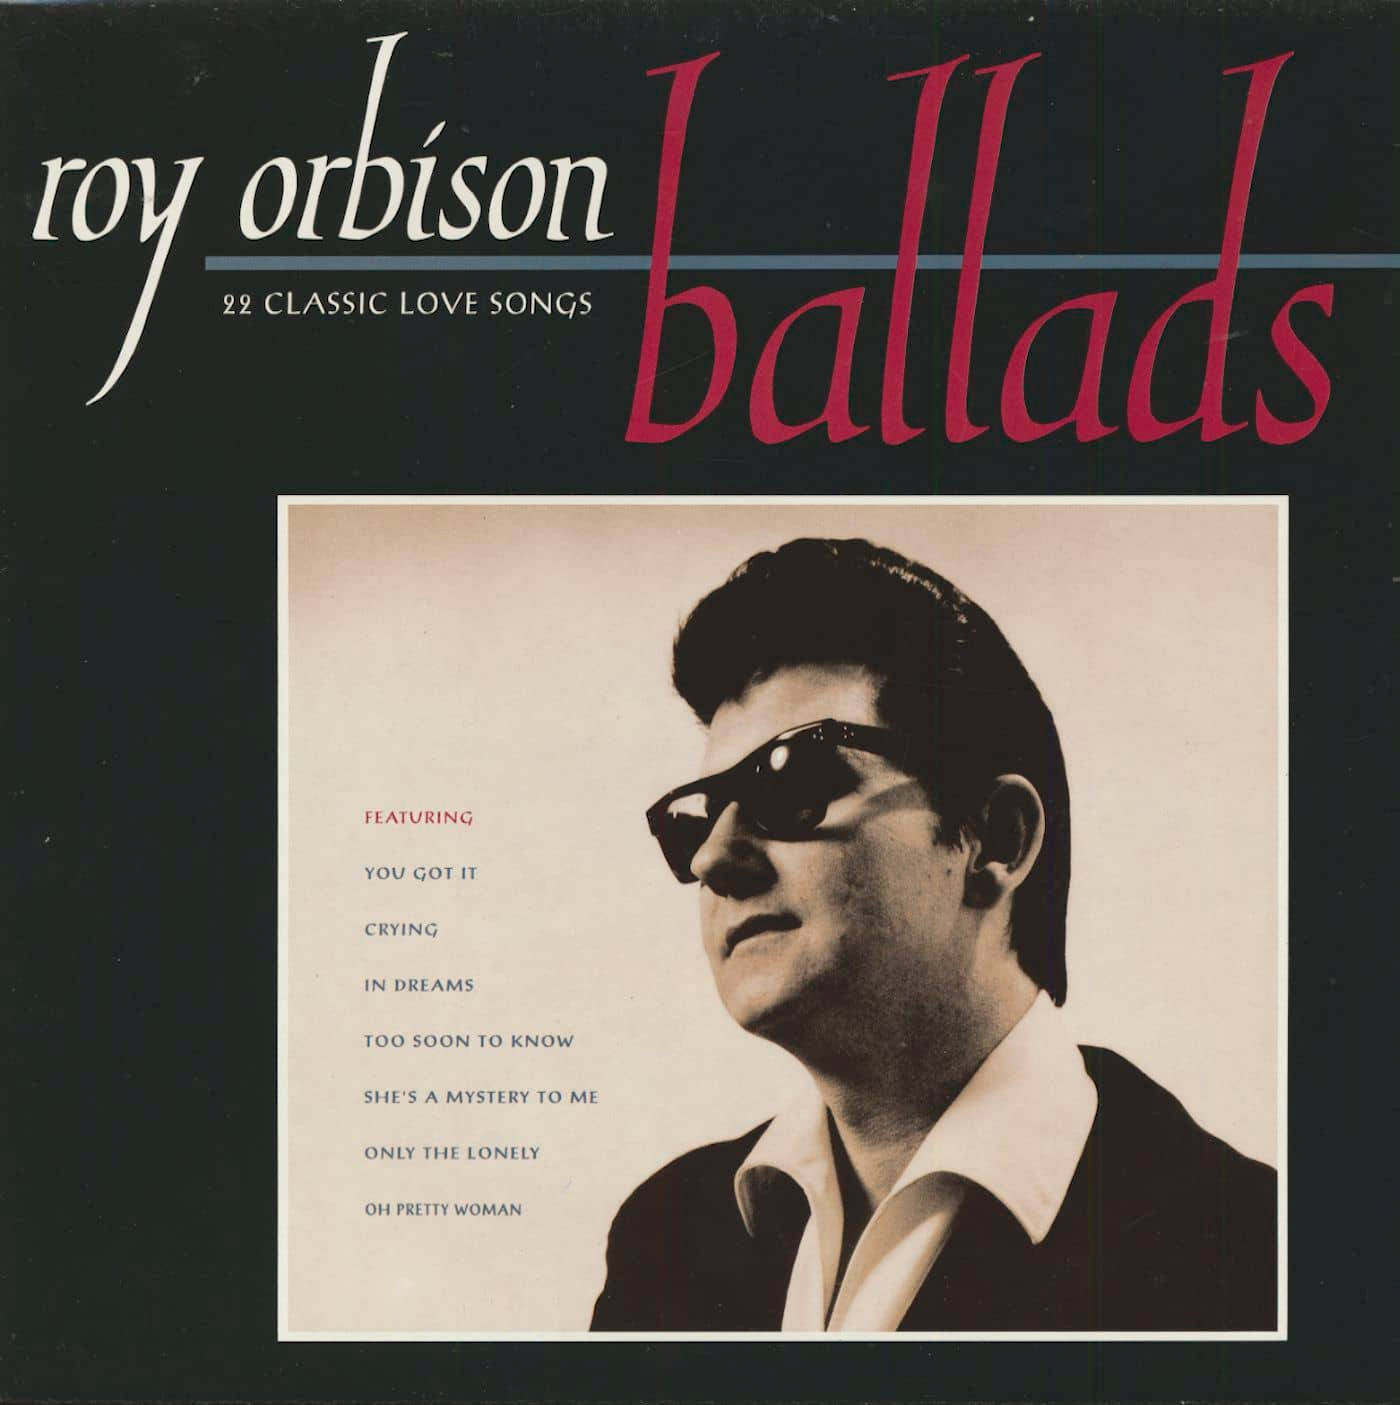 Royorbison Balladen Album Cover Wallpaper